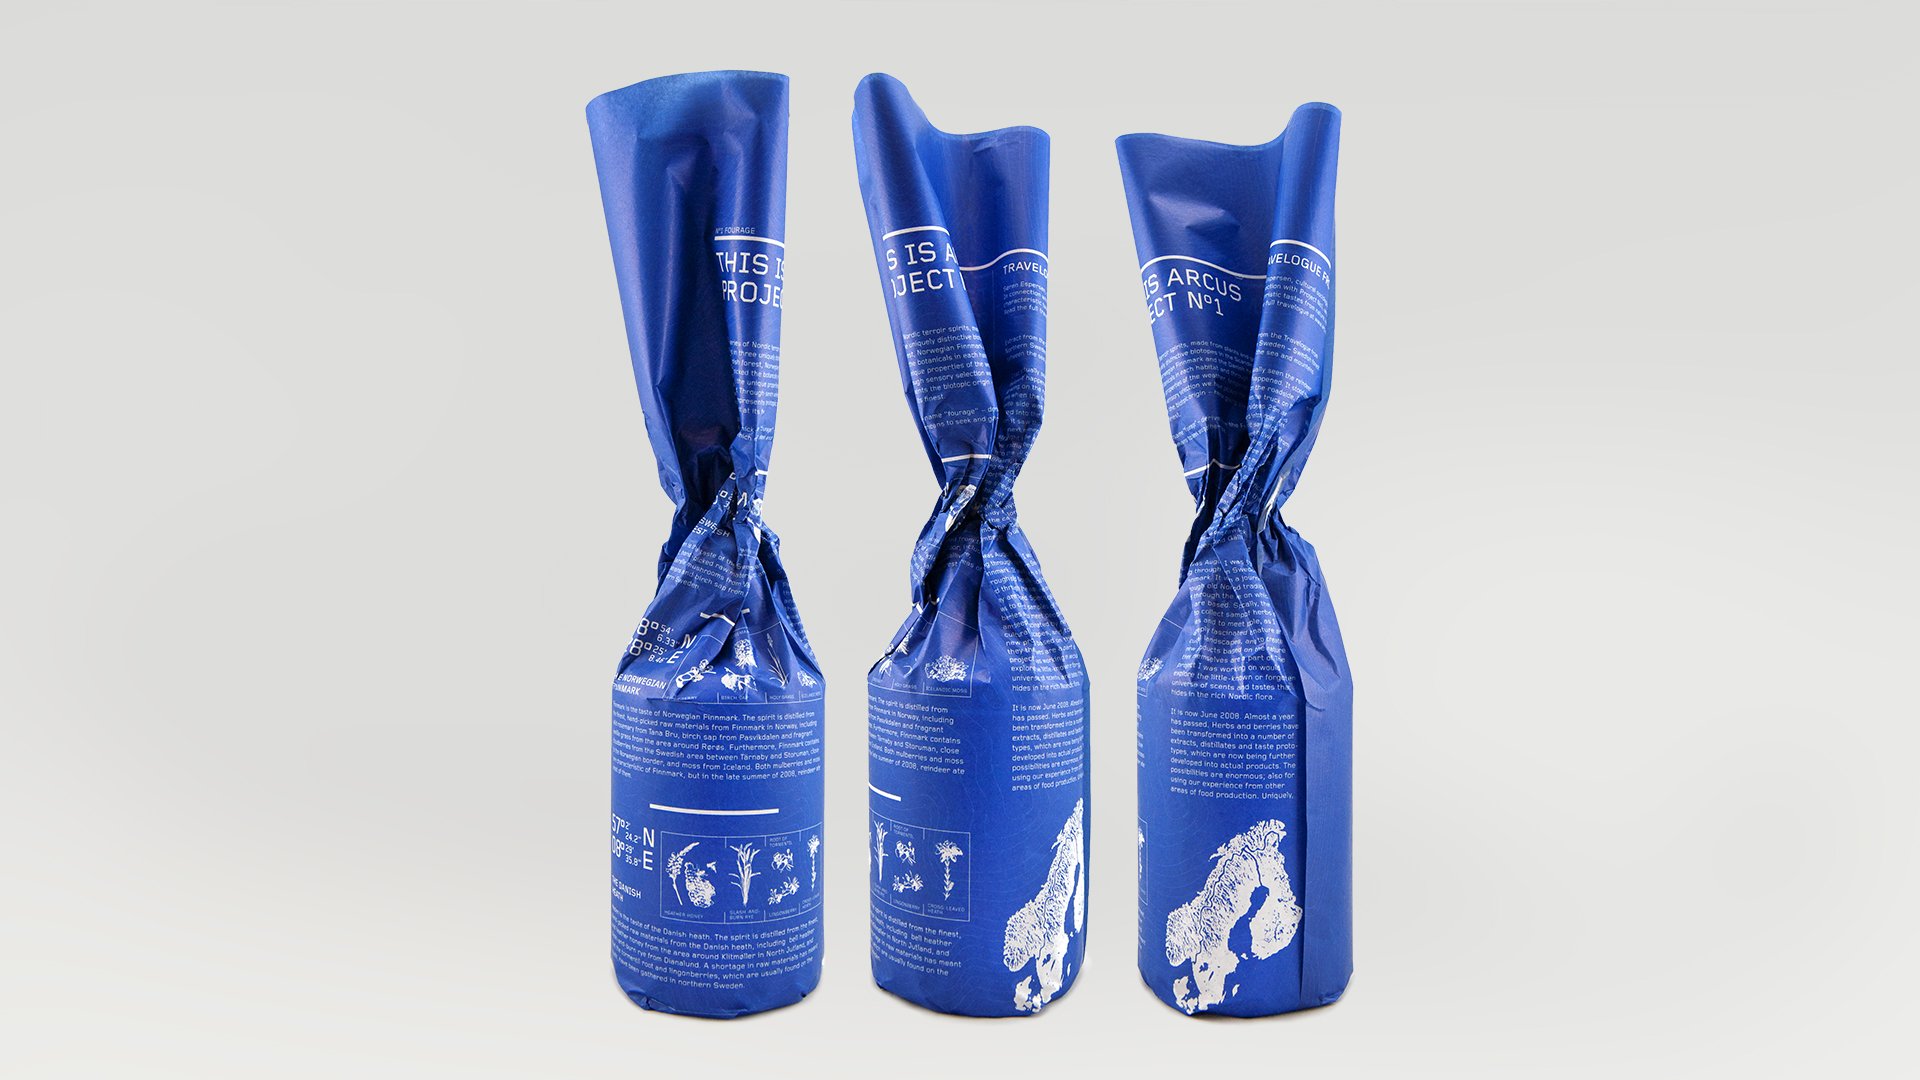 Arcus packaging design by LOOP Associates